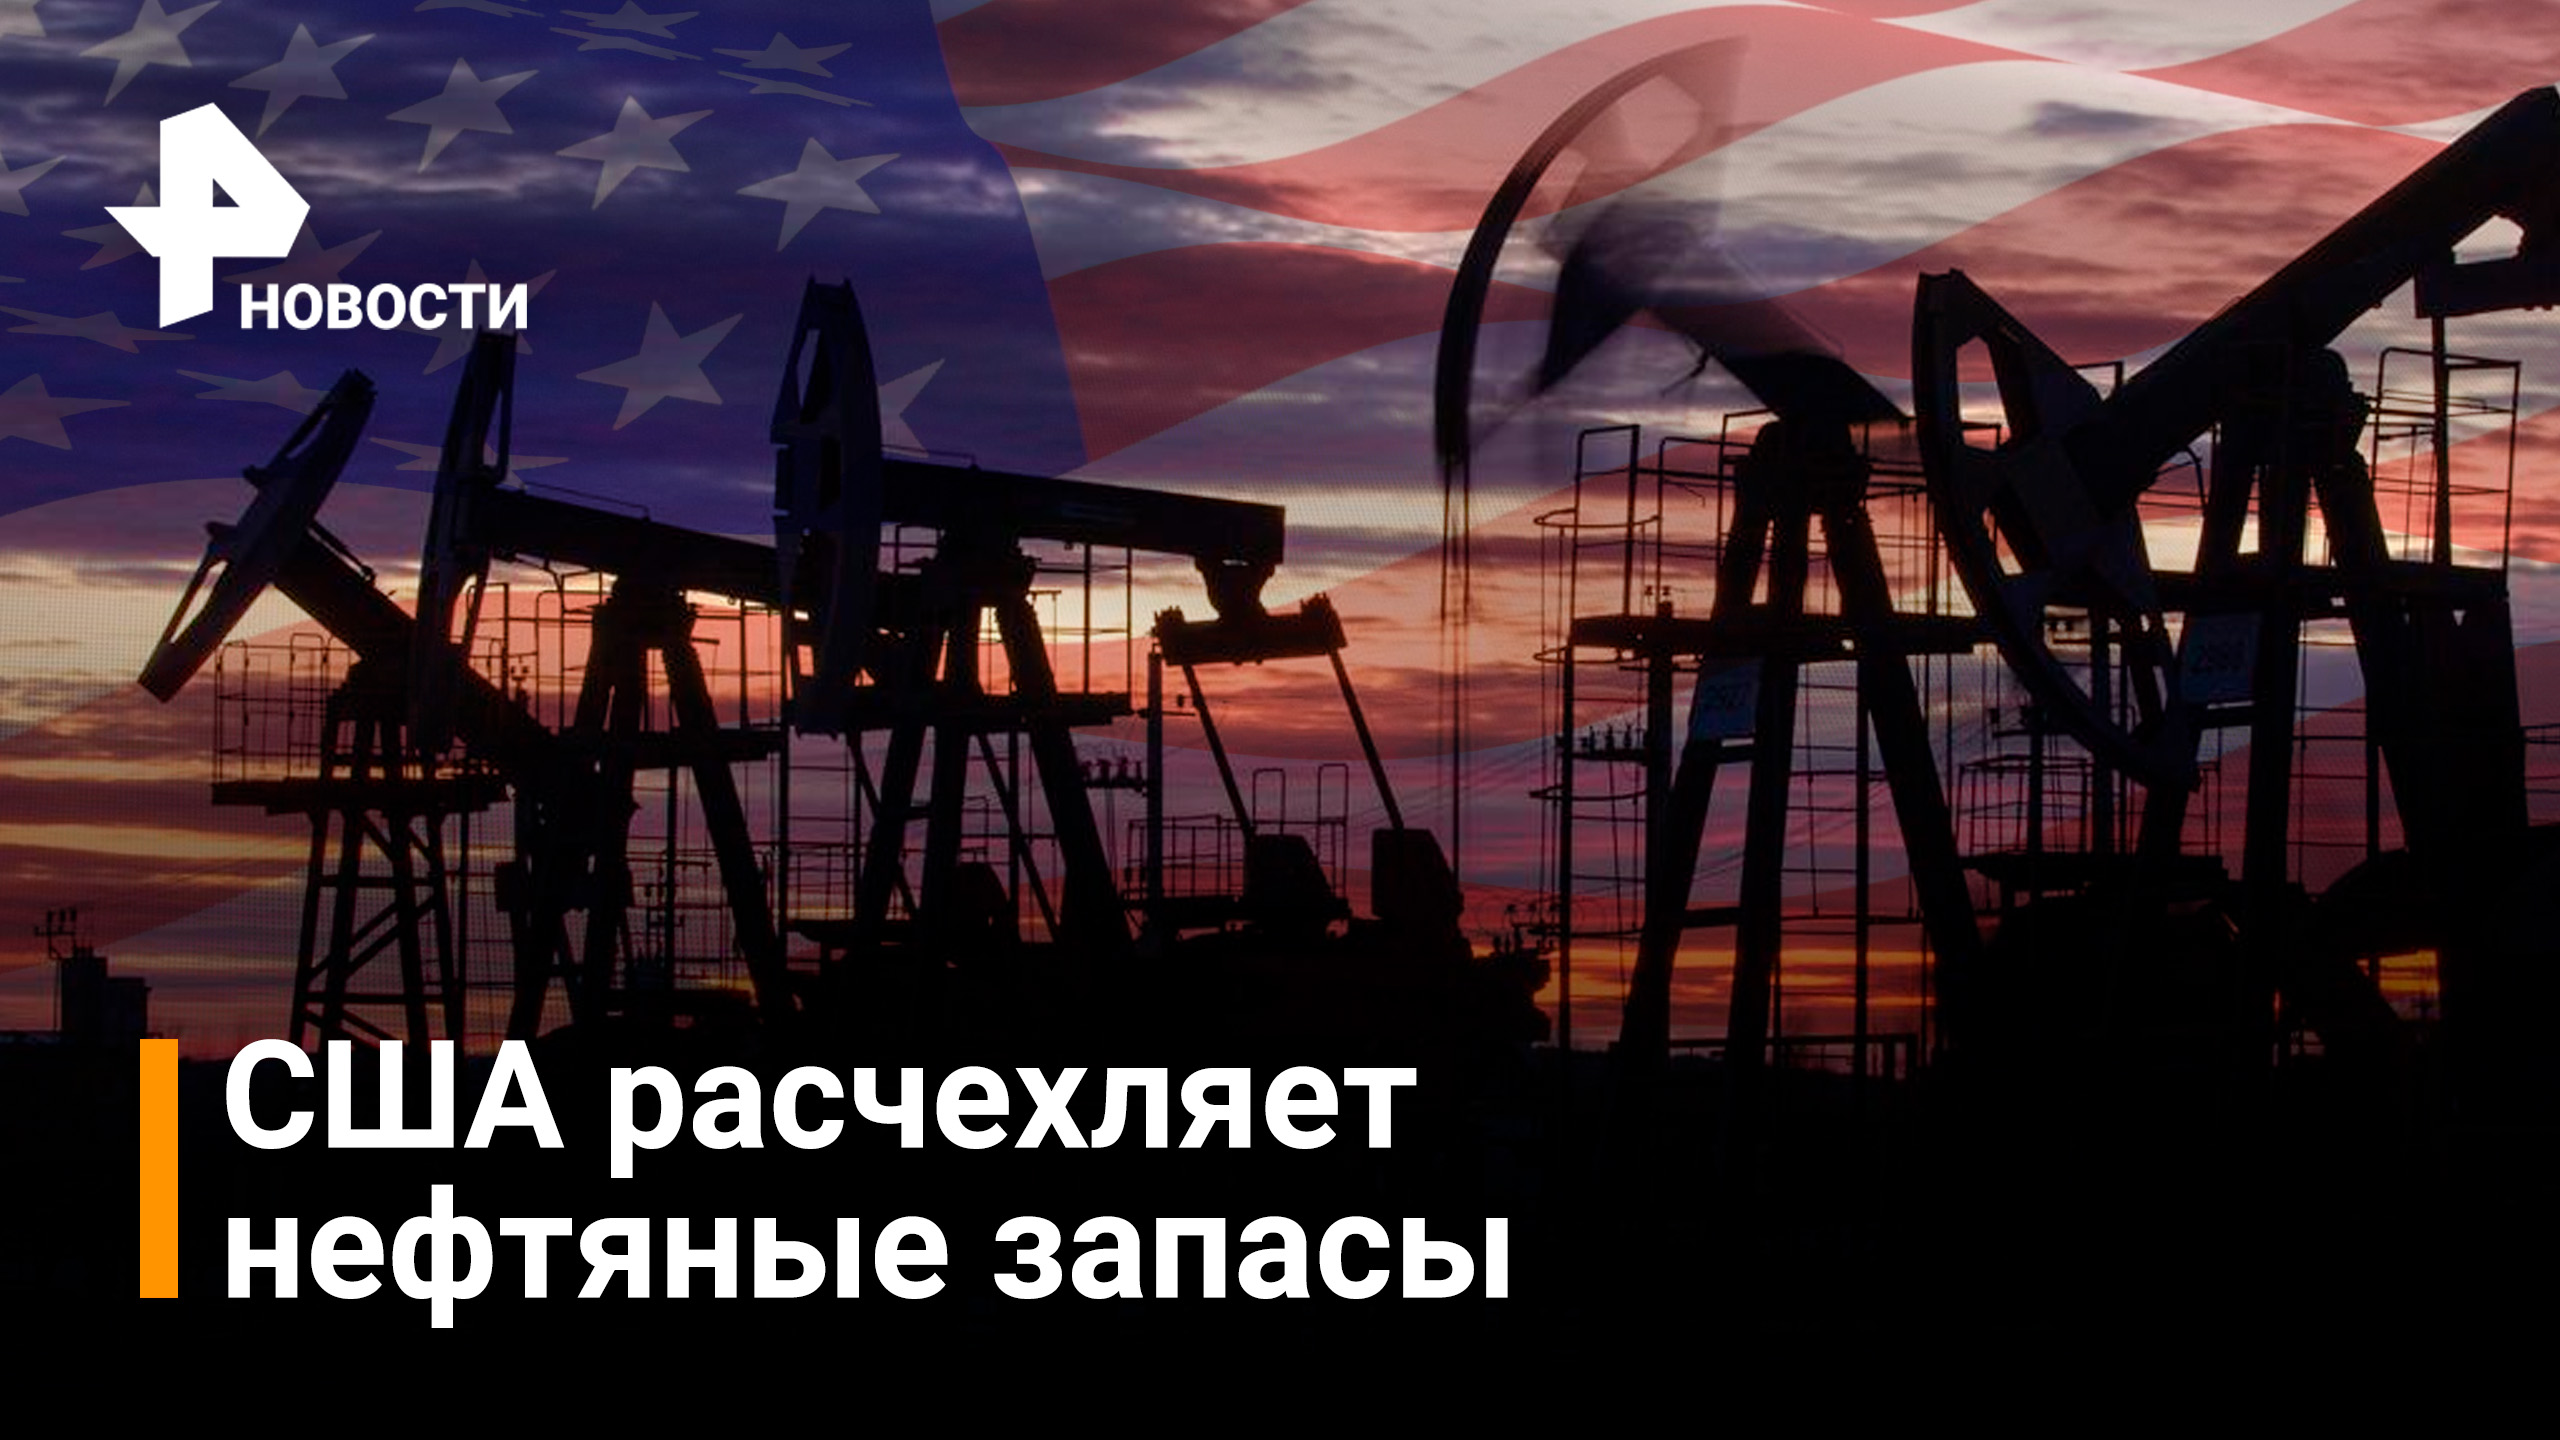 США будут распечатывать по 1 млн баррелей нефти из стратегического запаса / Новости РЕН